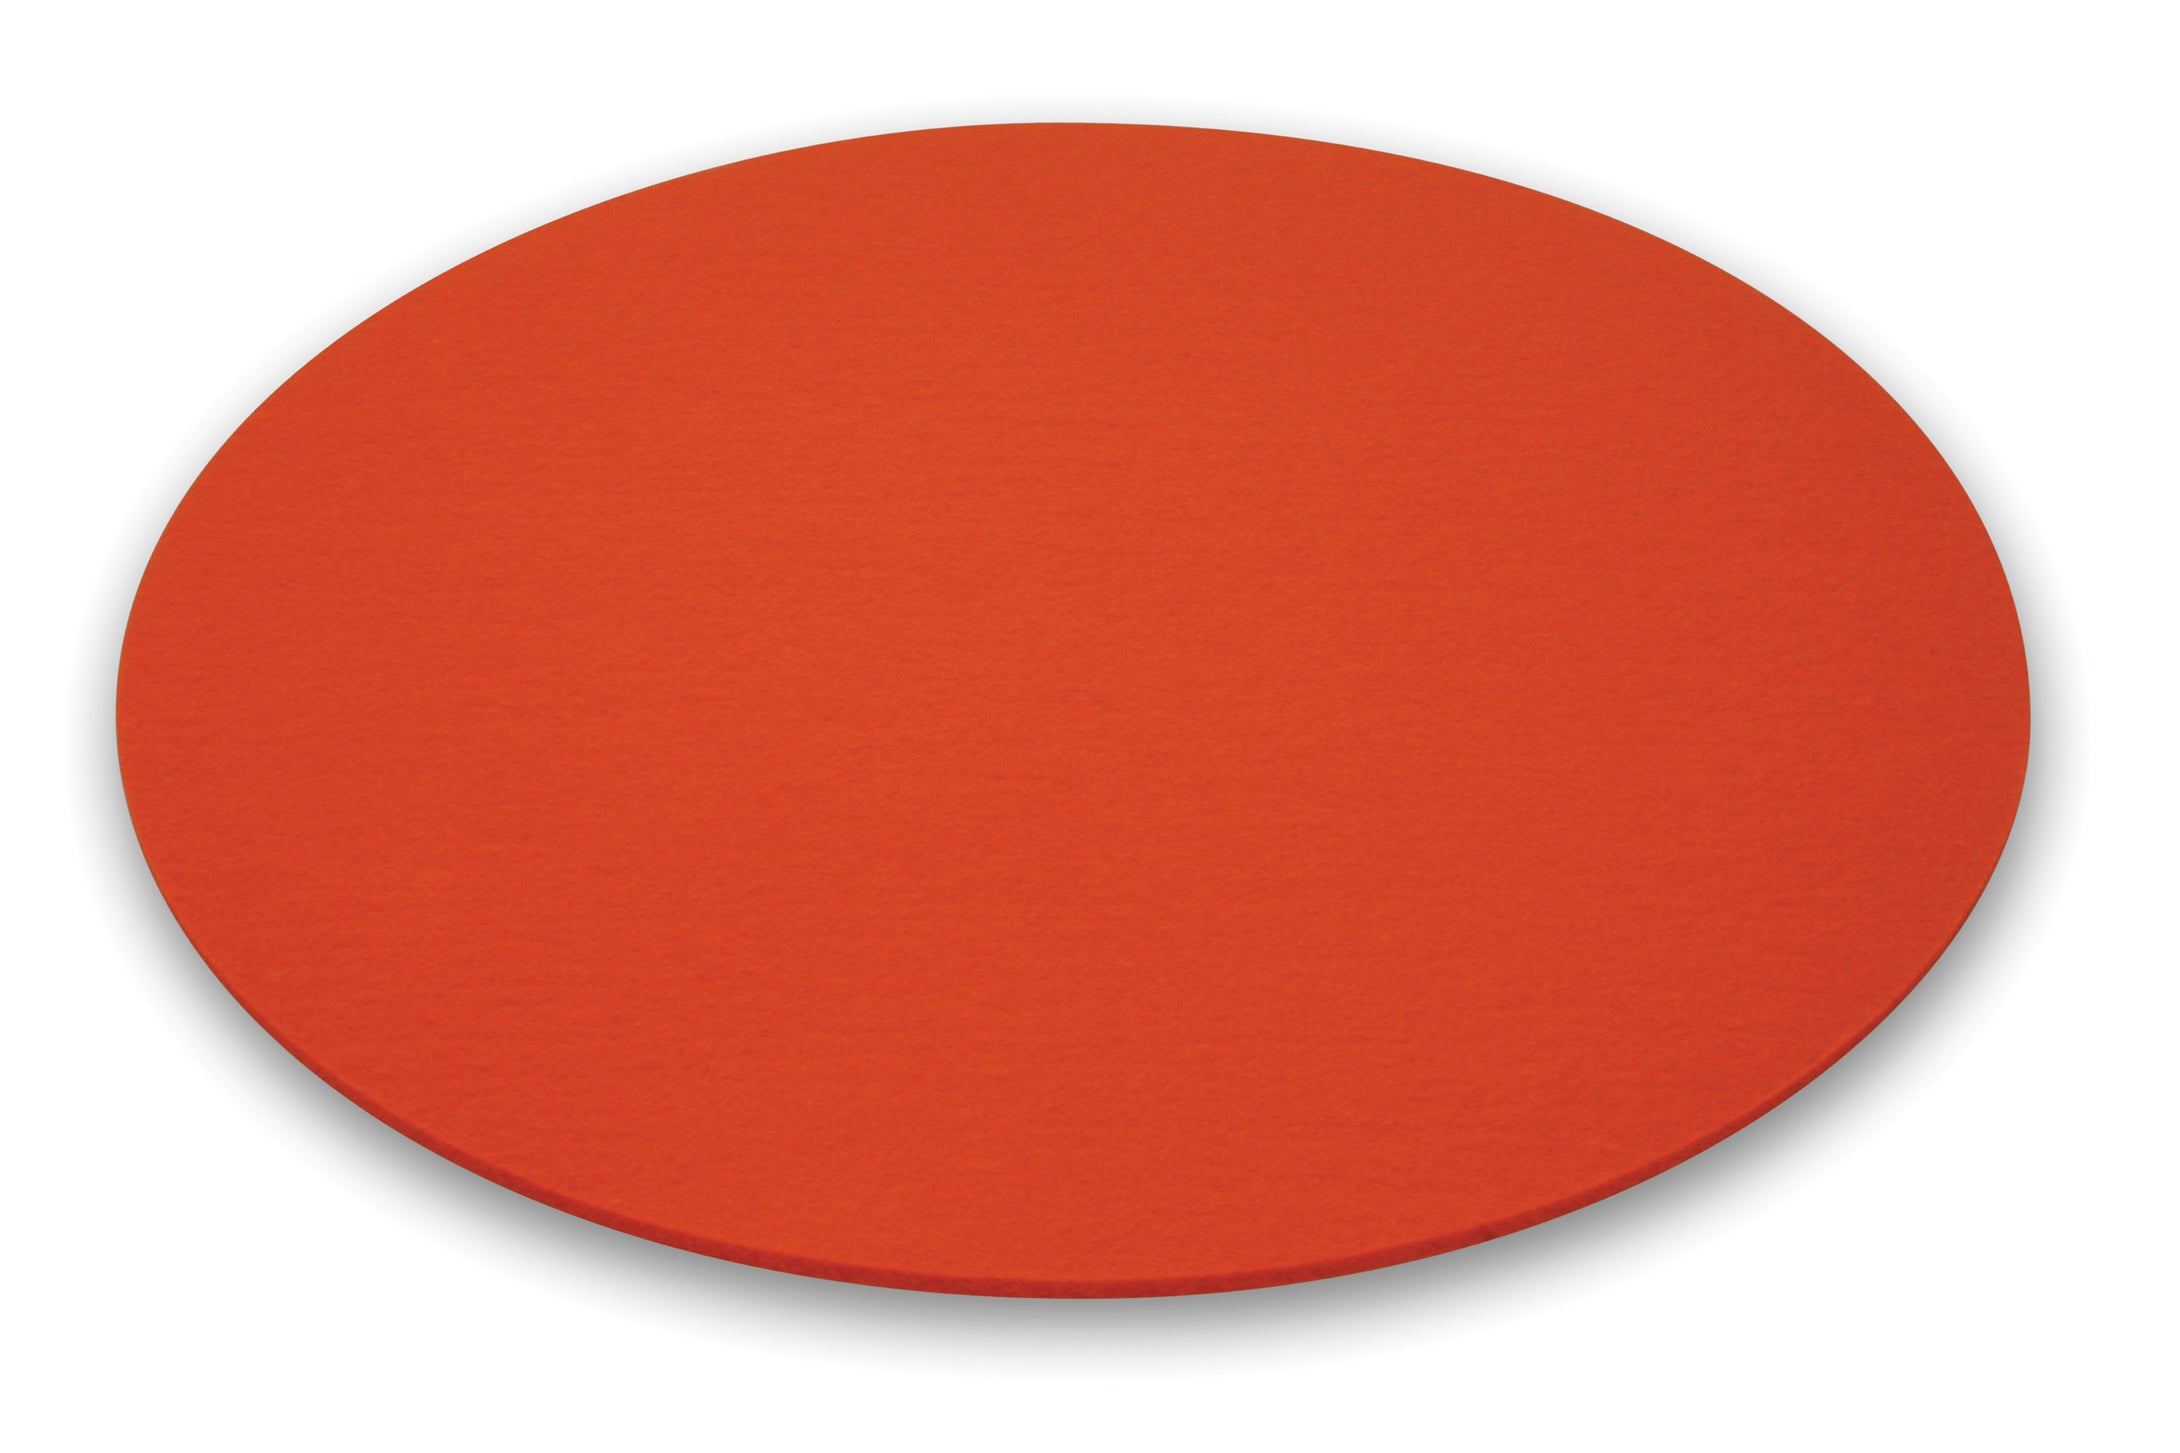 Runde Filzauflage für den Leuchttisch BUBBLE von Moree in orange; Ø 40cm.